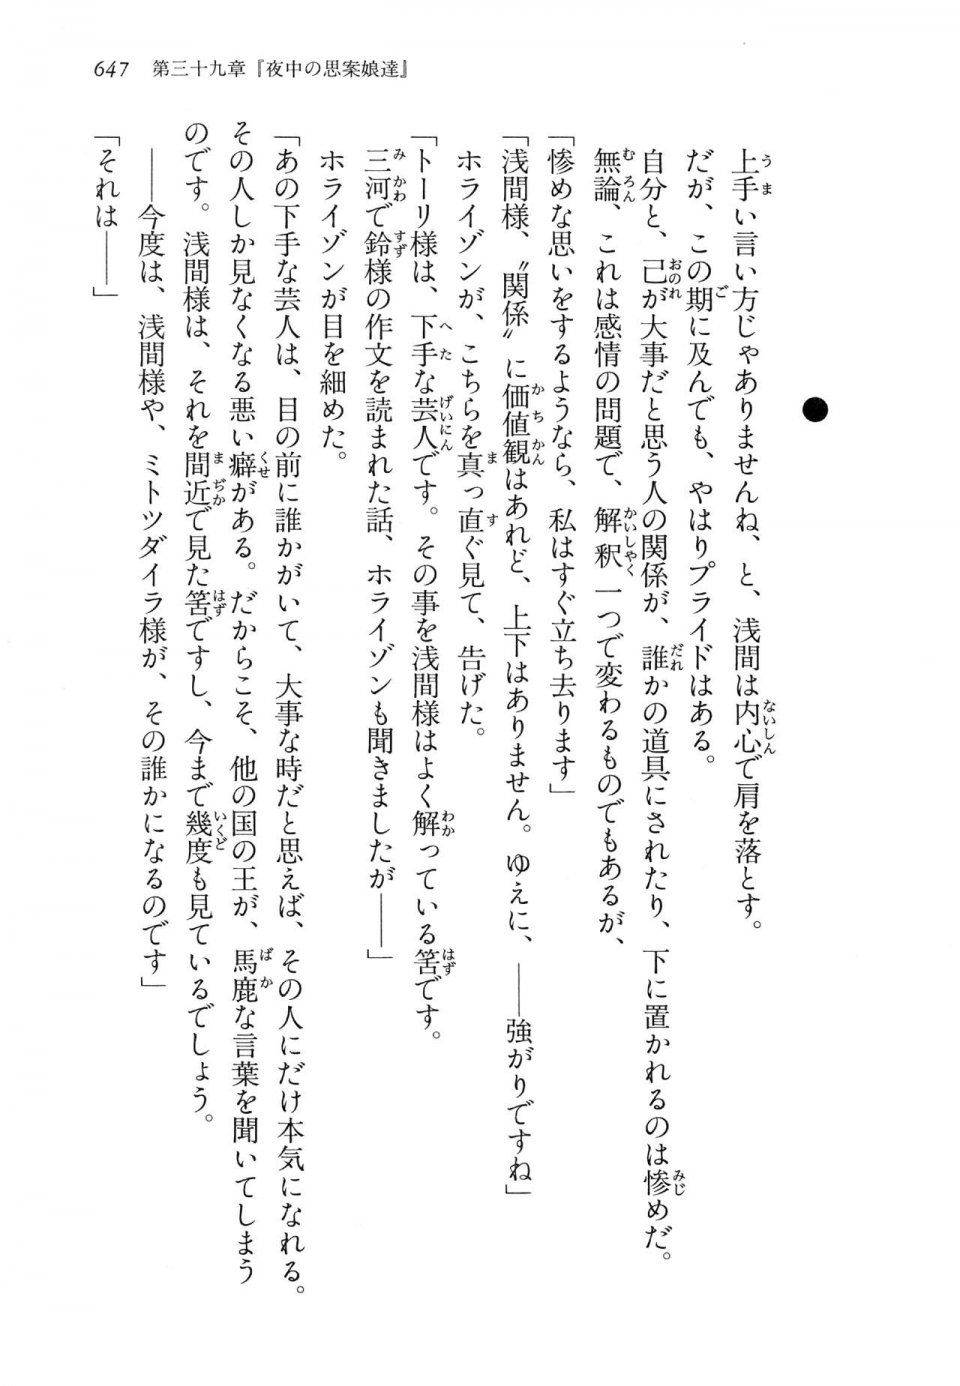 Kyoukai Senjou no Horizon LN Vol 14(6B) - Photo #647